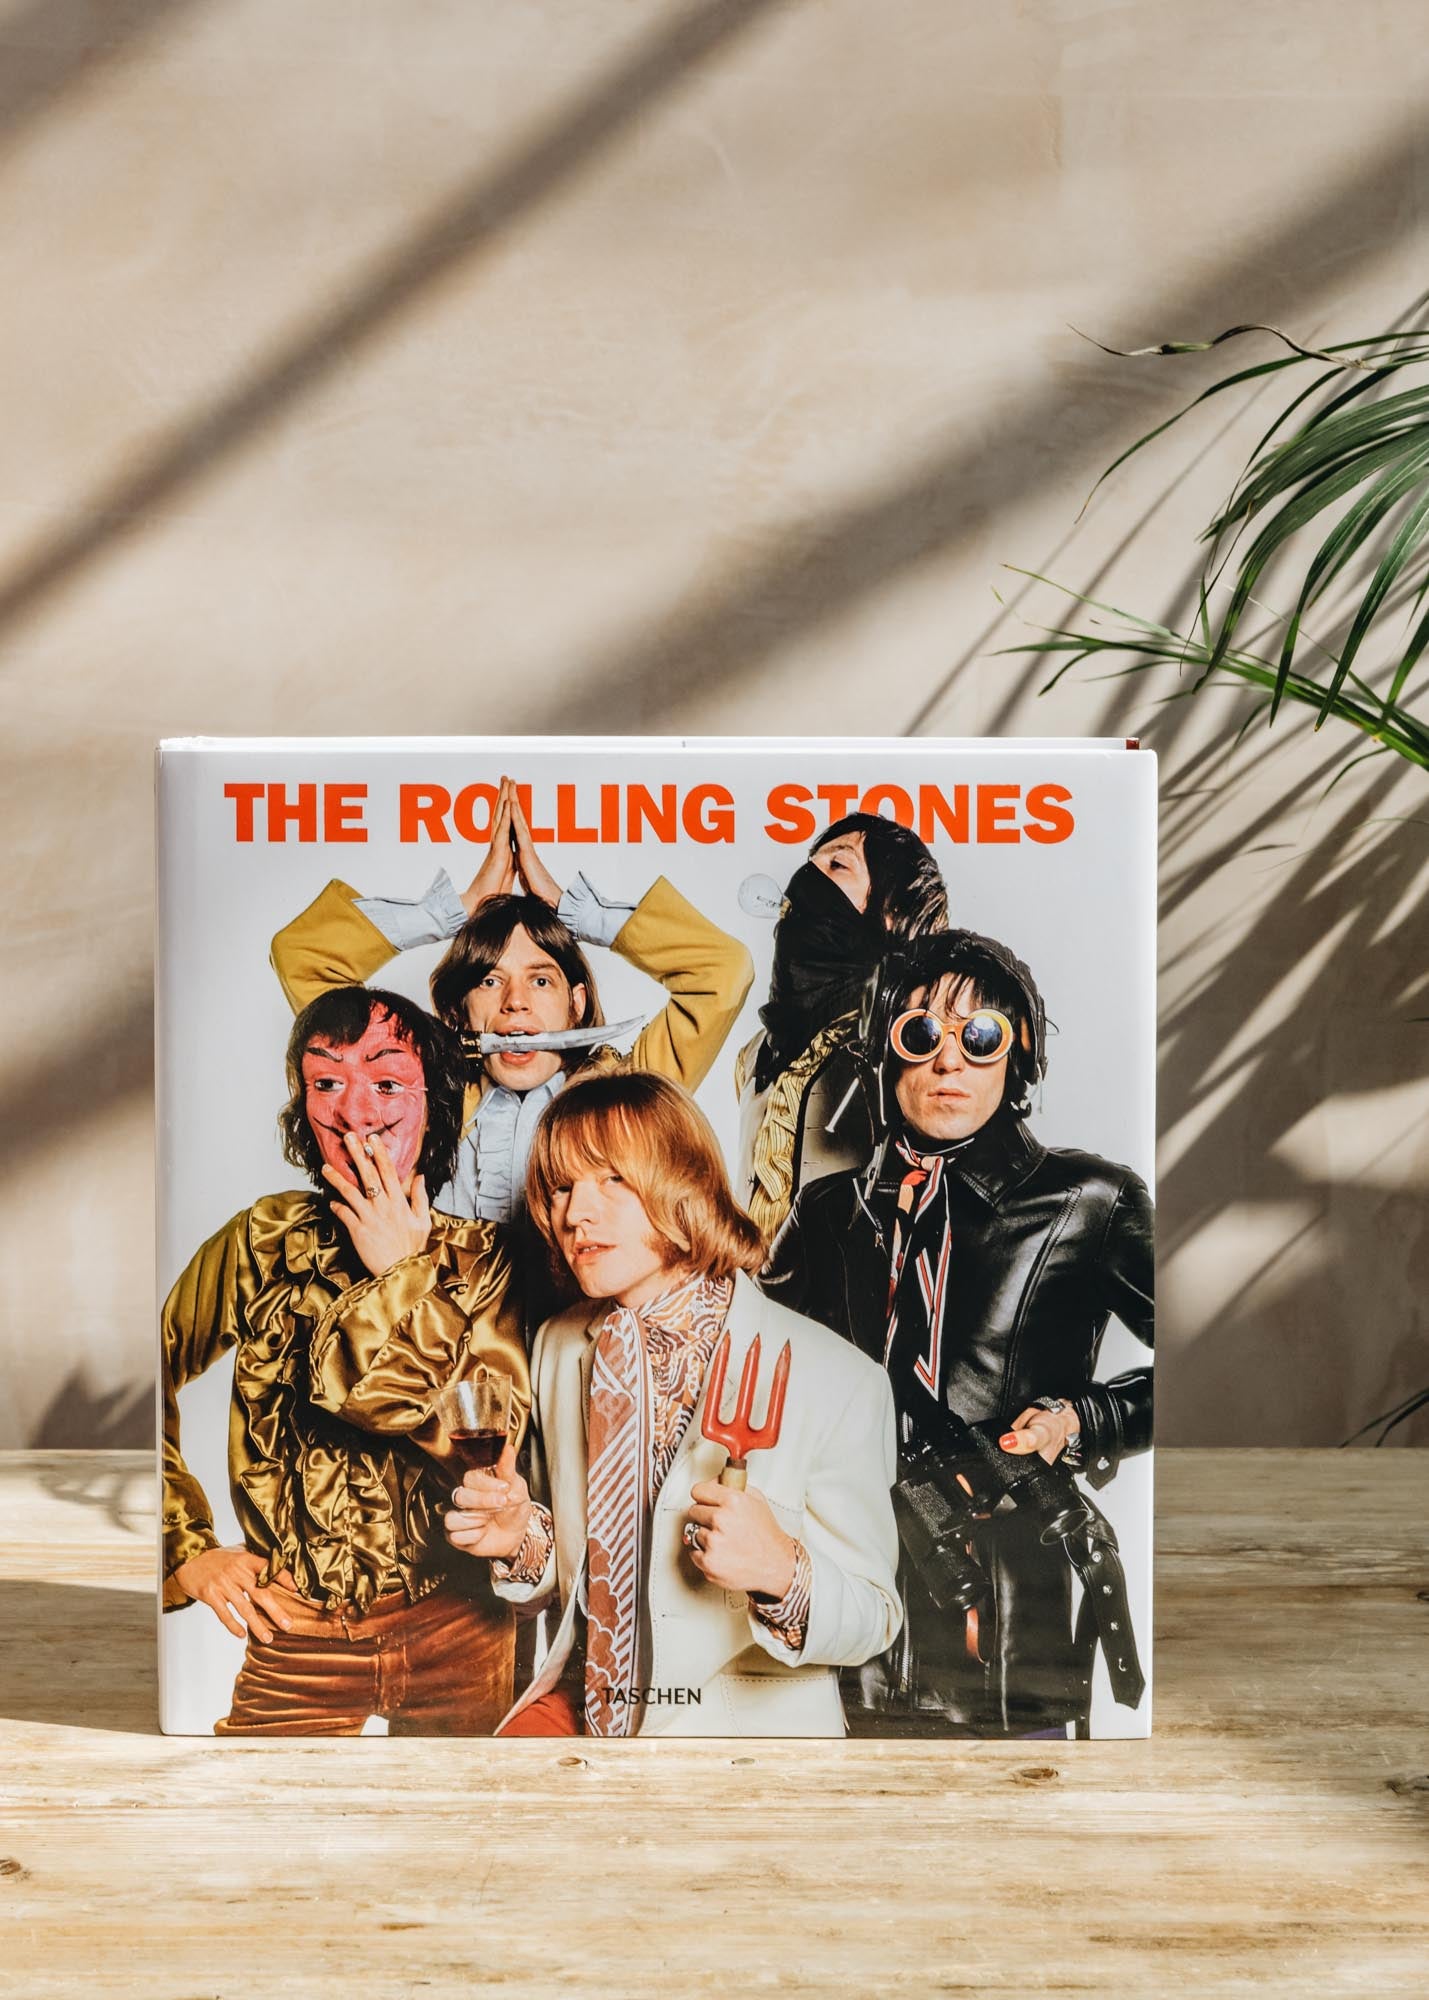 The Rolling Stones by Golden, Reuel